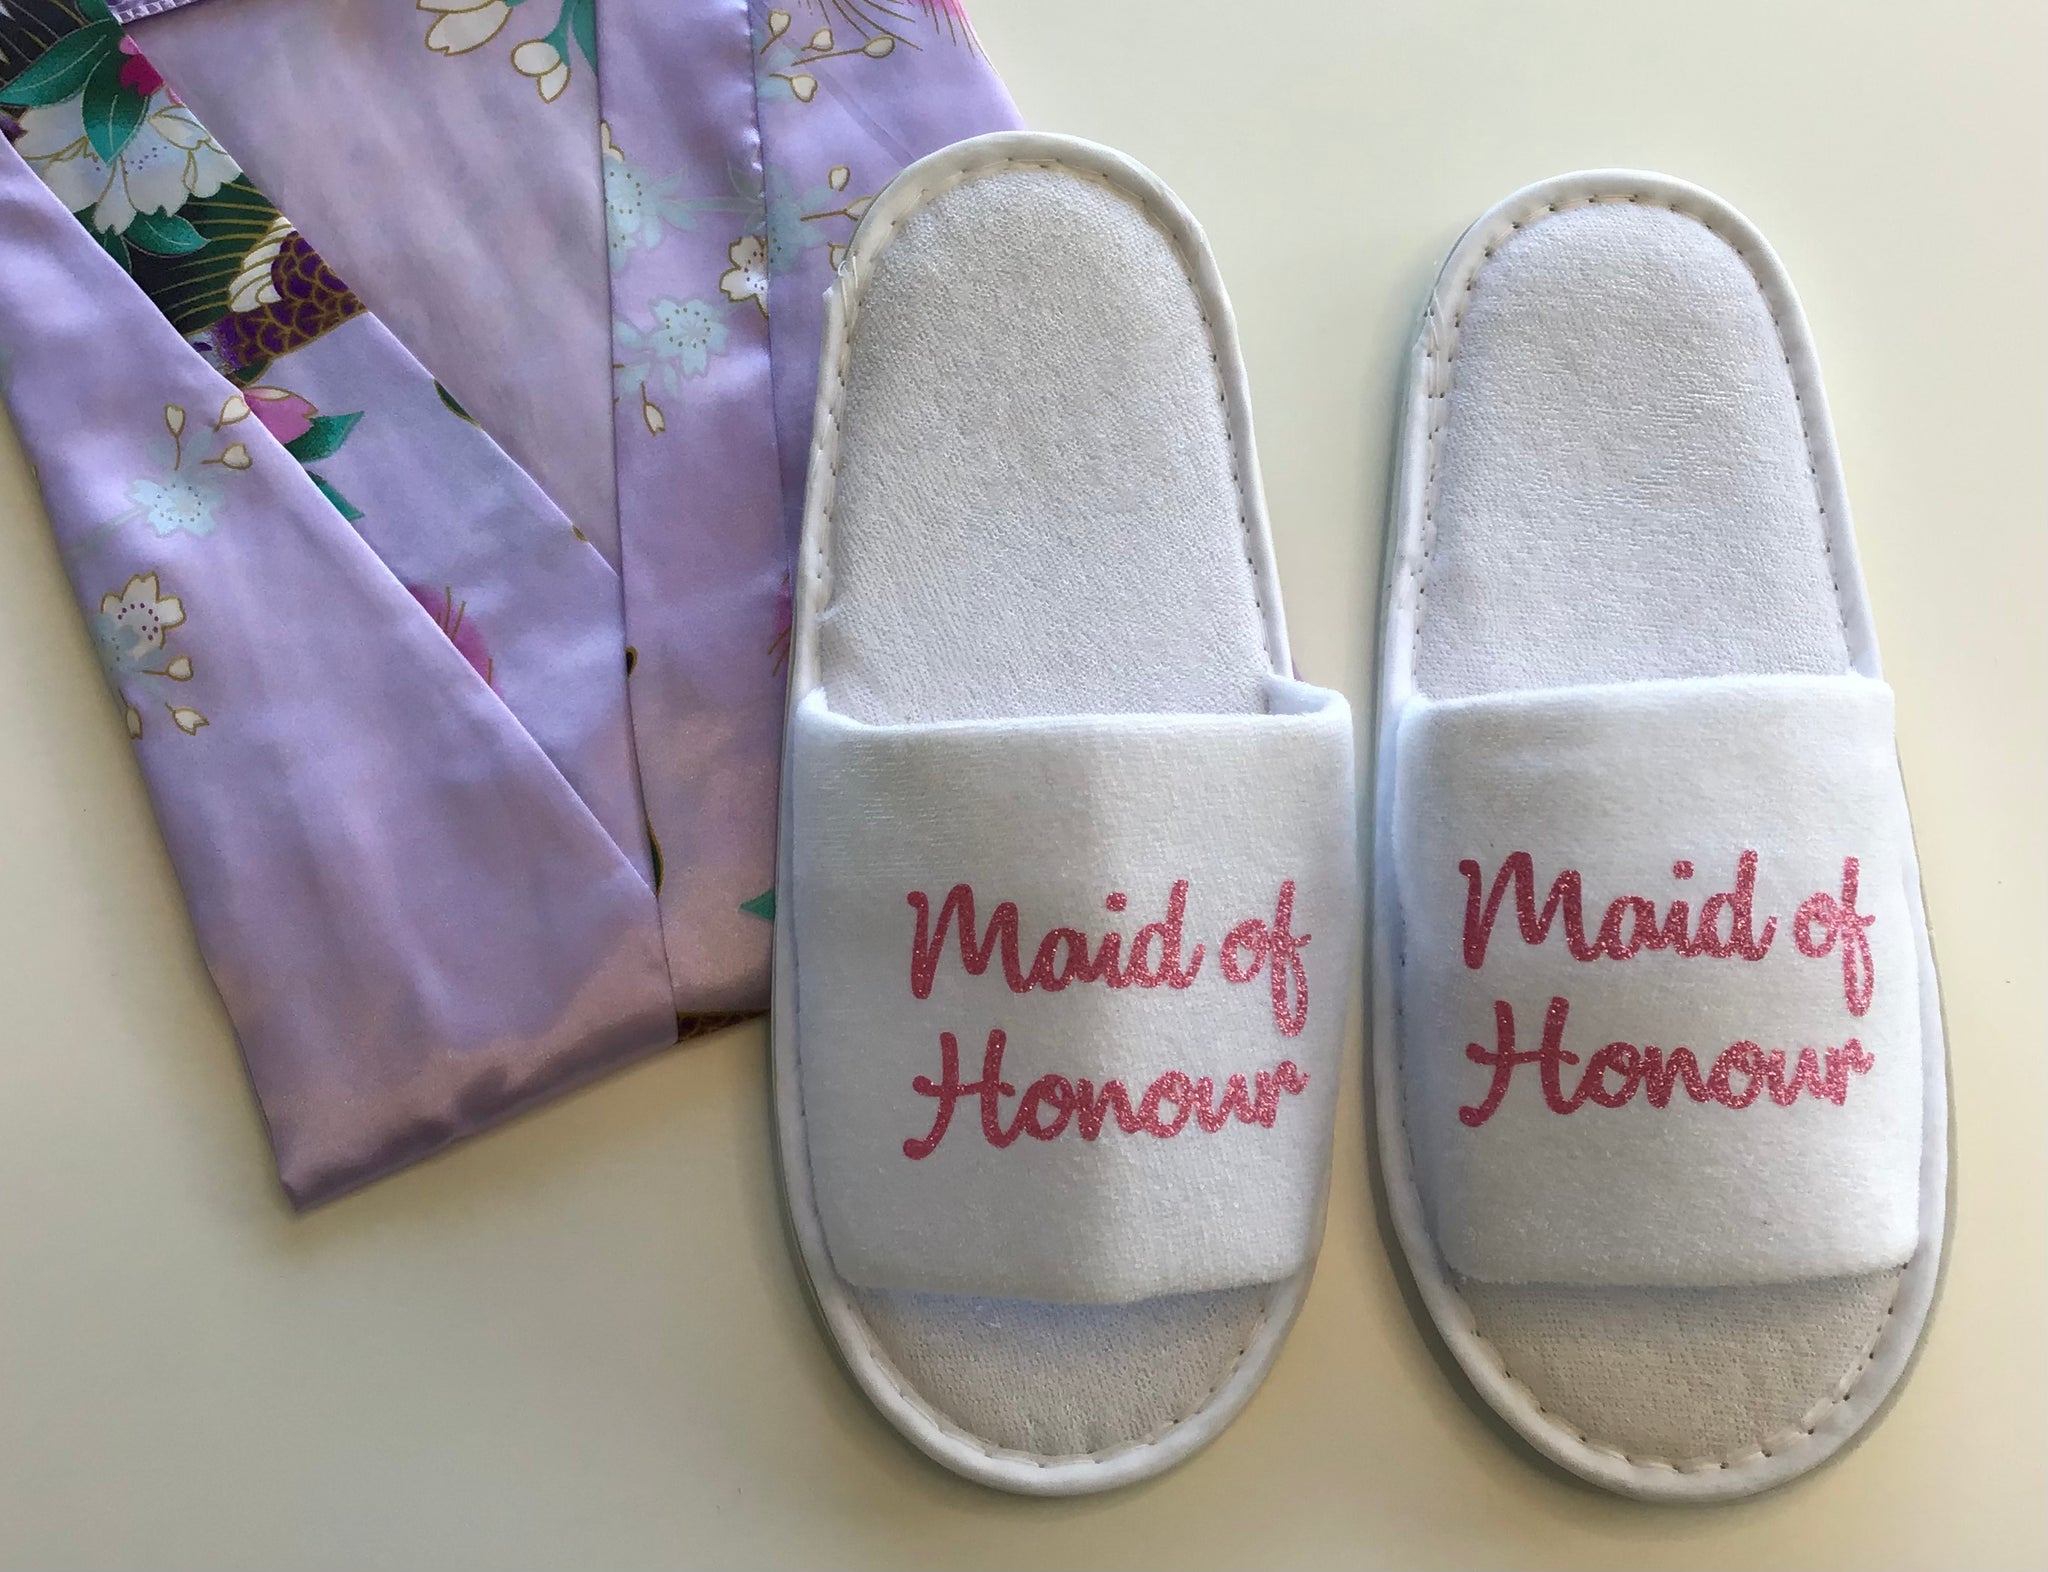 Maid of Honour Slippers - Light Pink Glitter Script, Style C Handmade